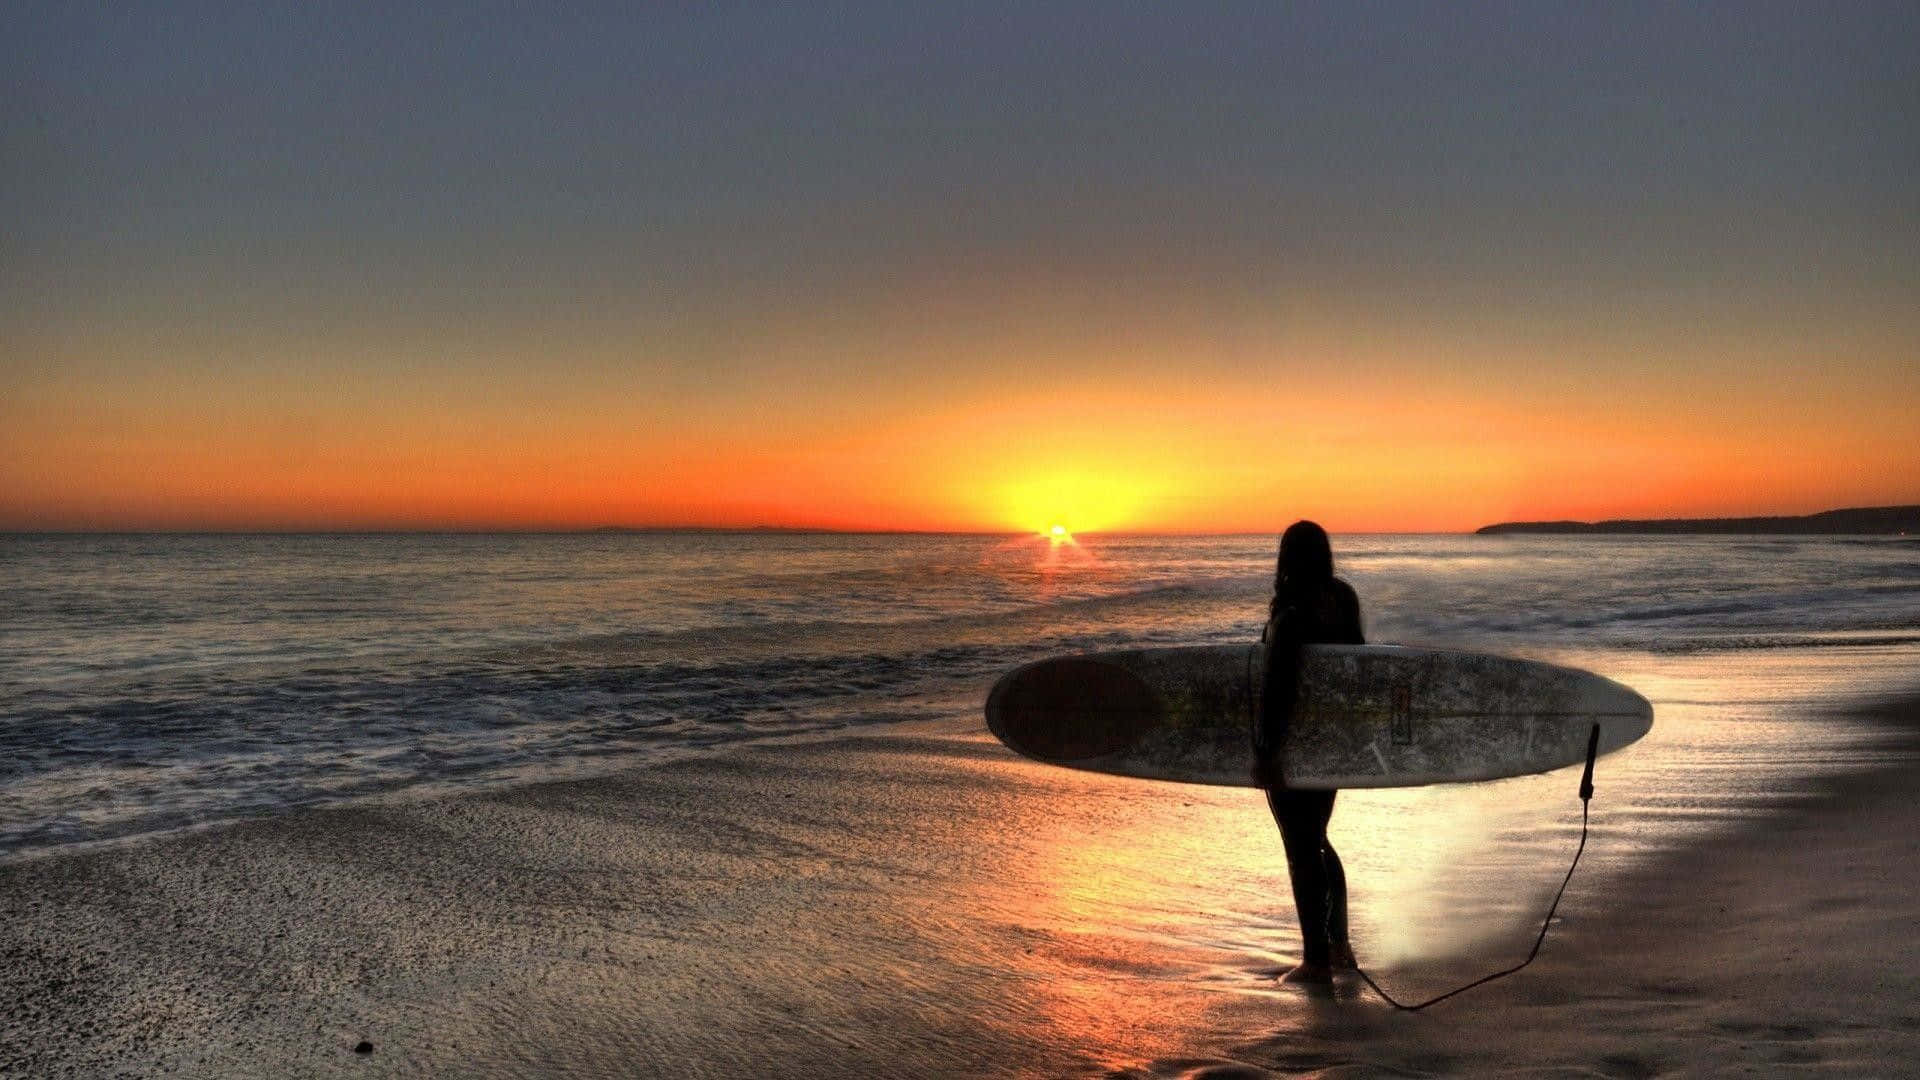 Imagende Una Chica Surfista En La Playa Al Atardecer